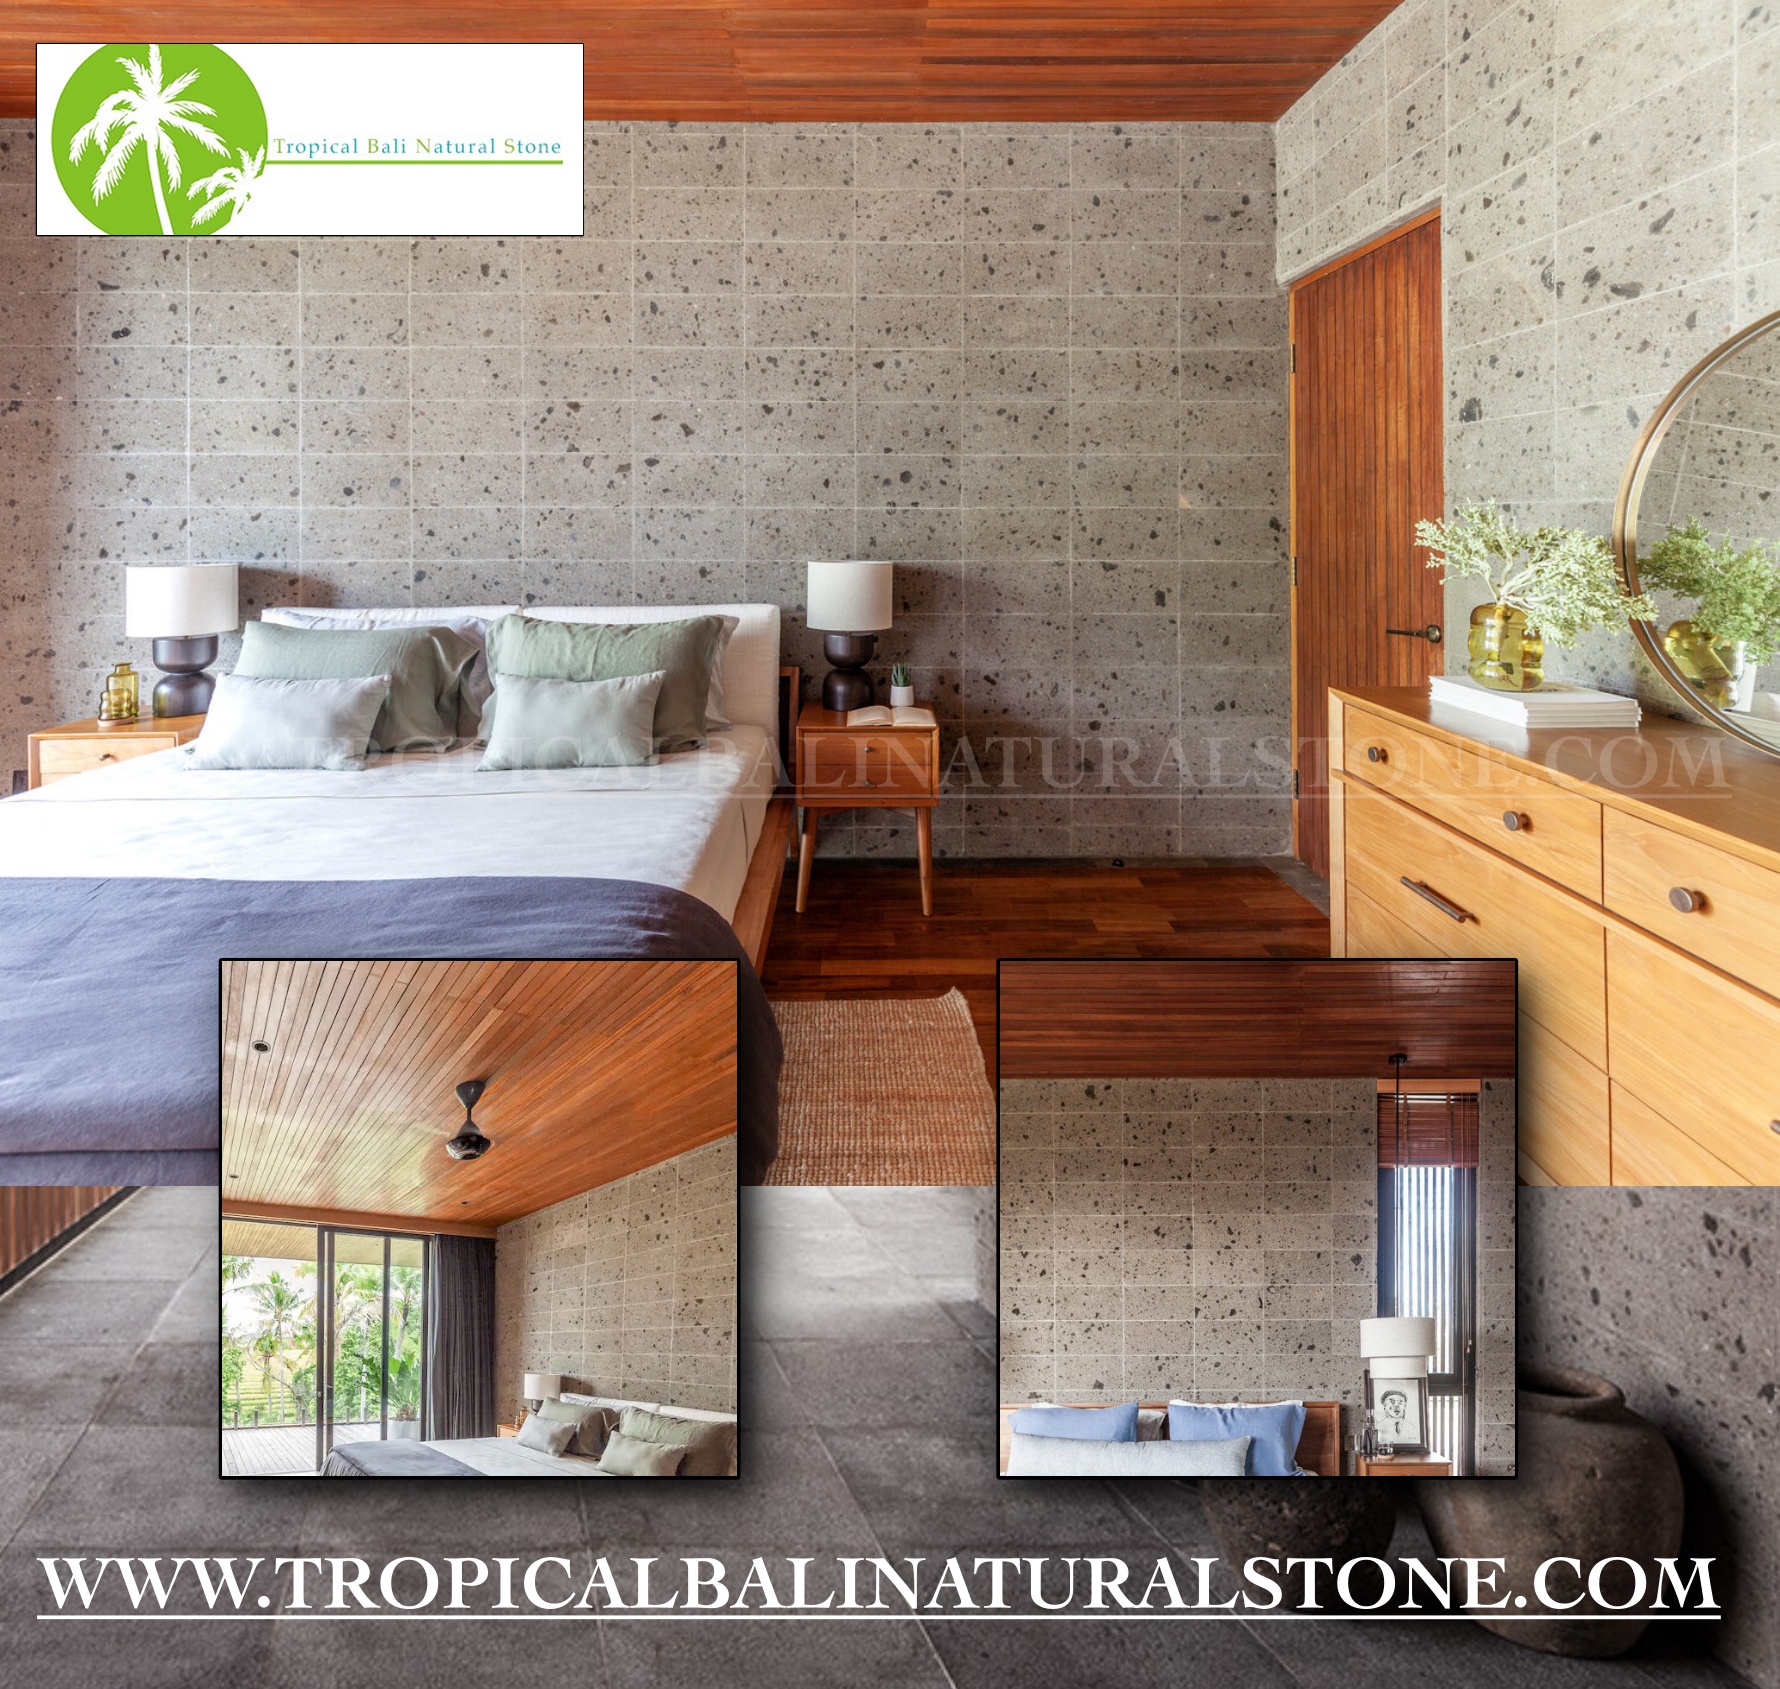 www.tropicalnaturalbalistone.com"Bali Kerobokan stone incorporated into a modern interior design."